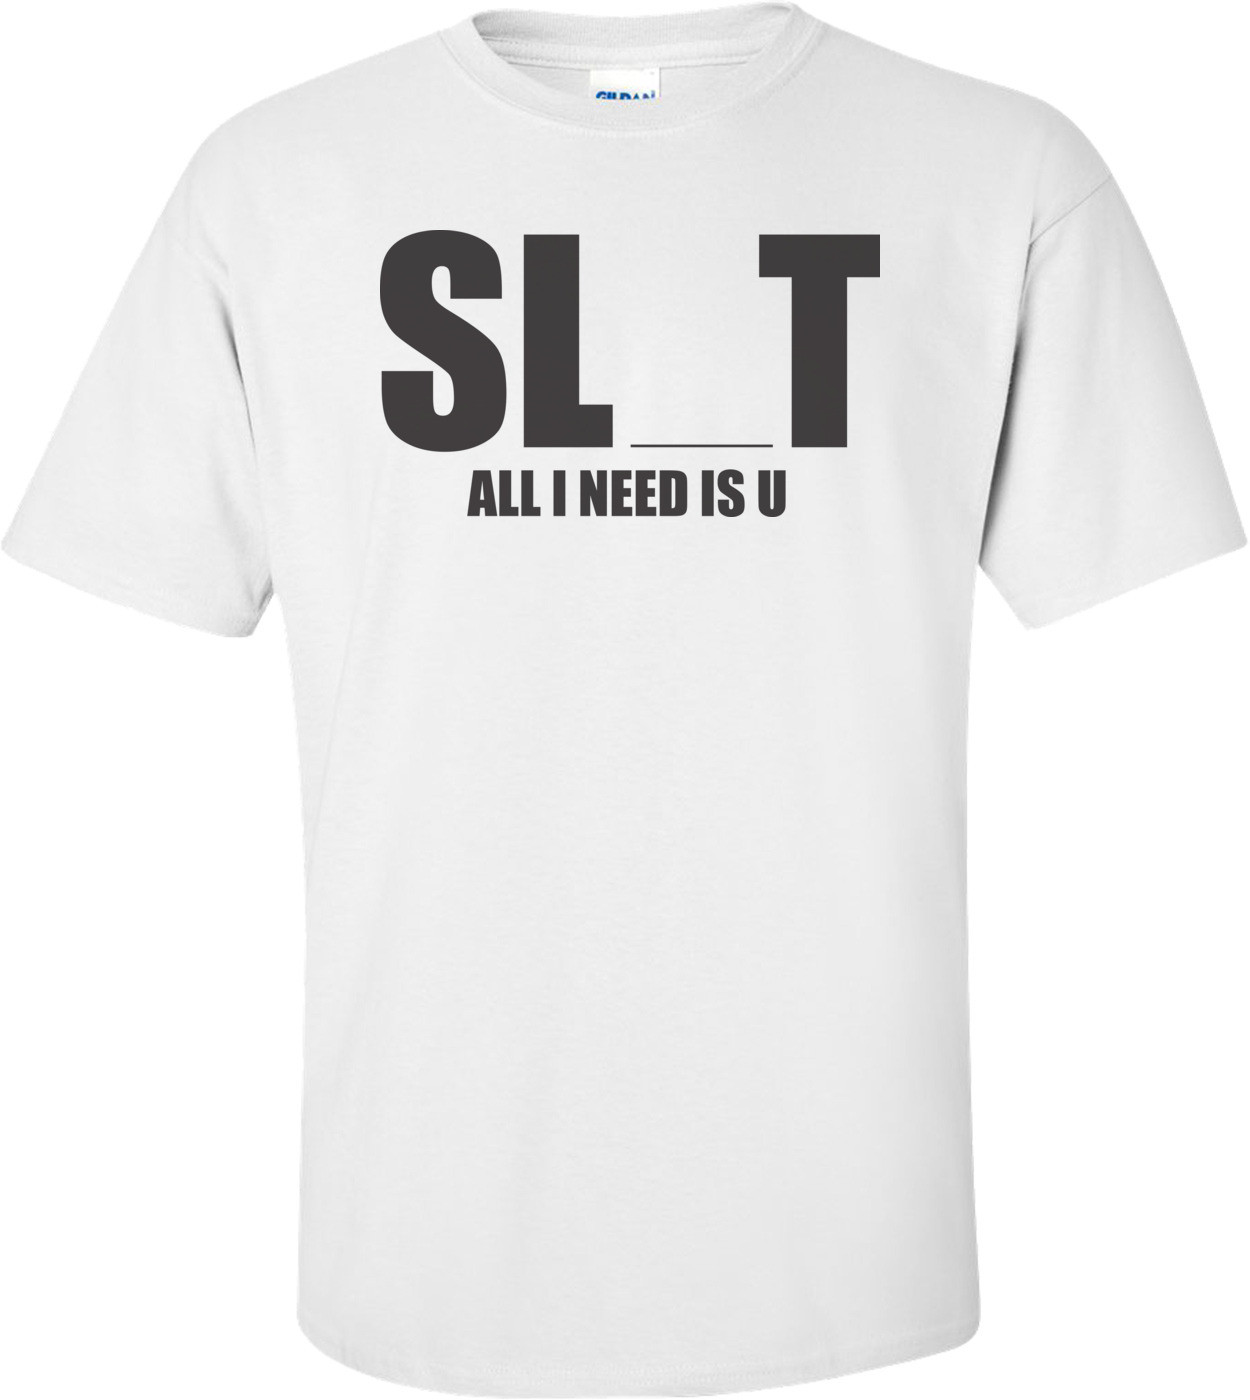 Sl T All I Need Is U T-shirt